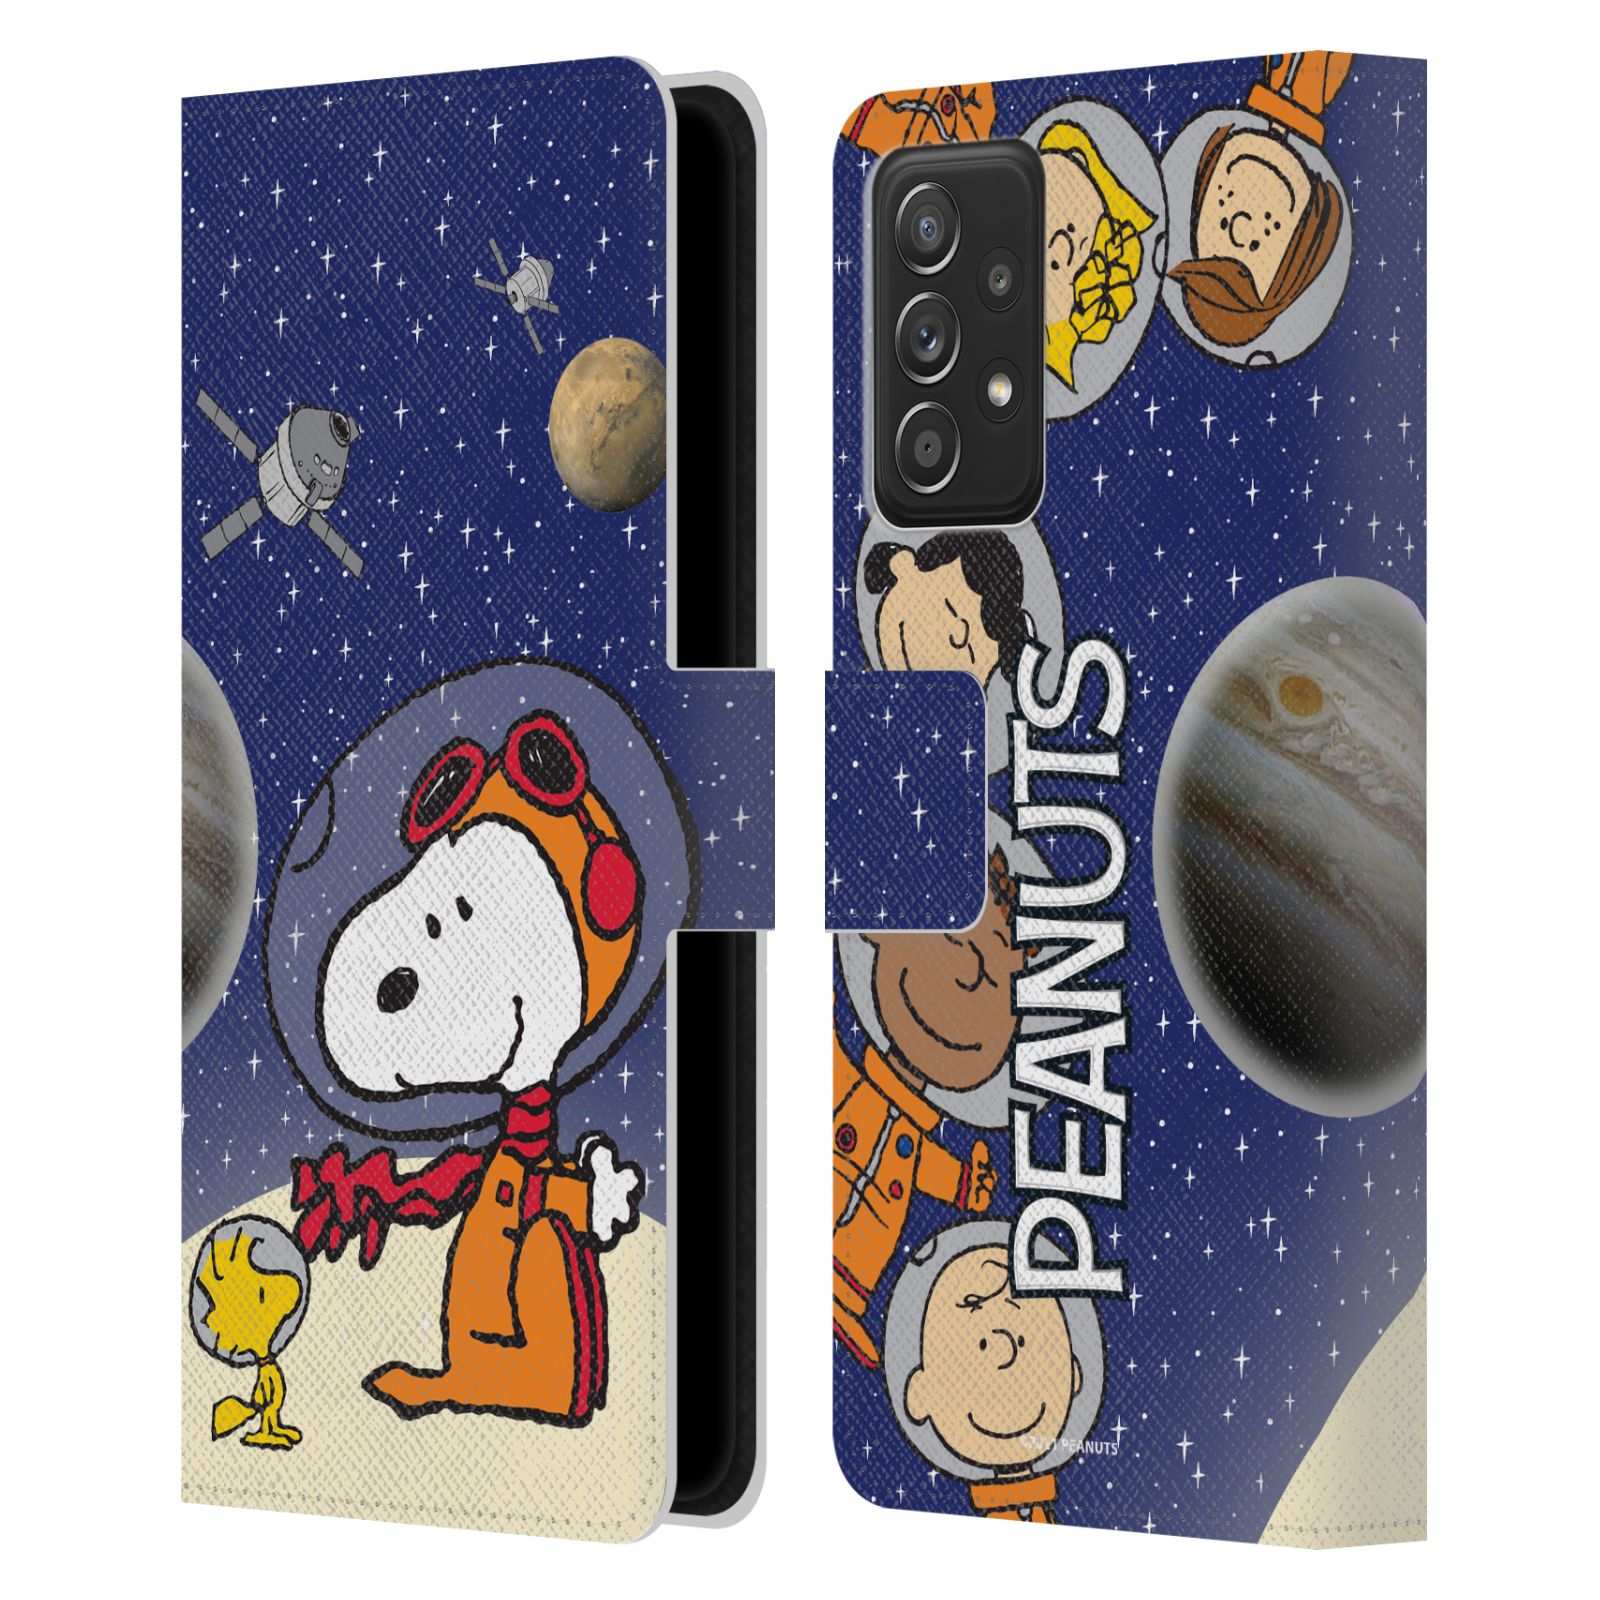 Pouzdro na mobil Samsung Galaxy A52 / A52 G - HEAD CASE - Peanuts Snoopy ve vesmíru 2